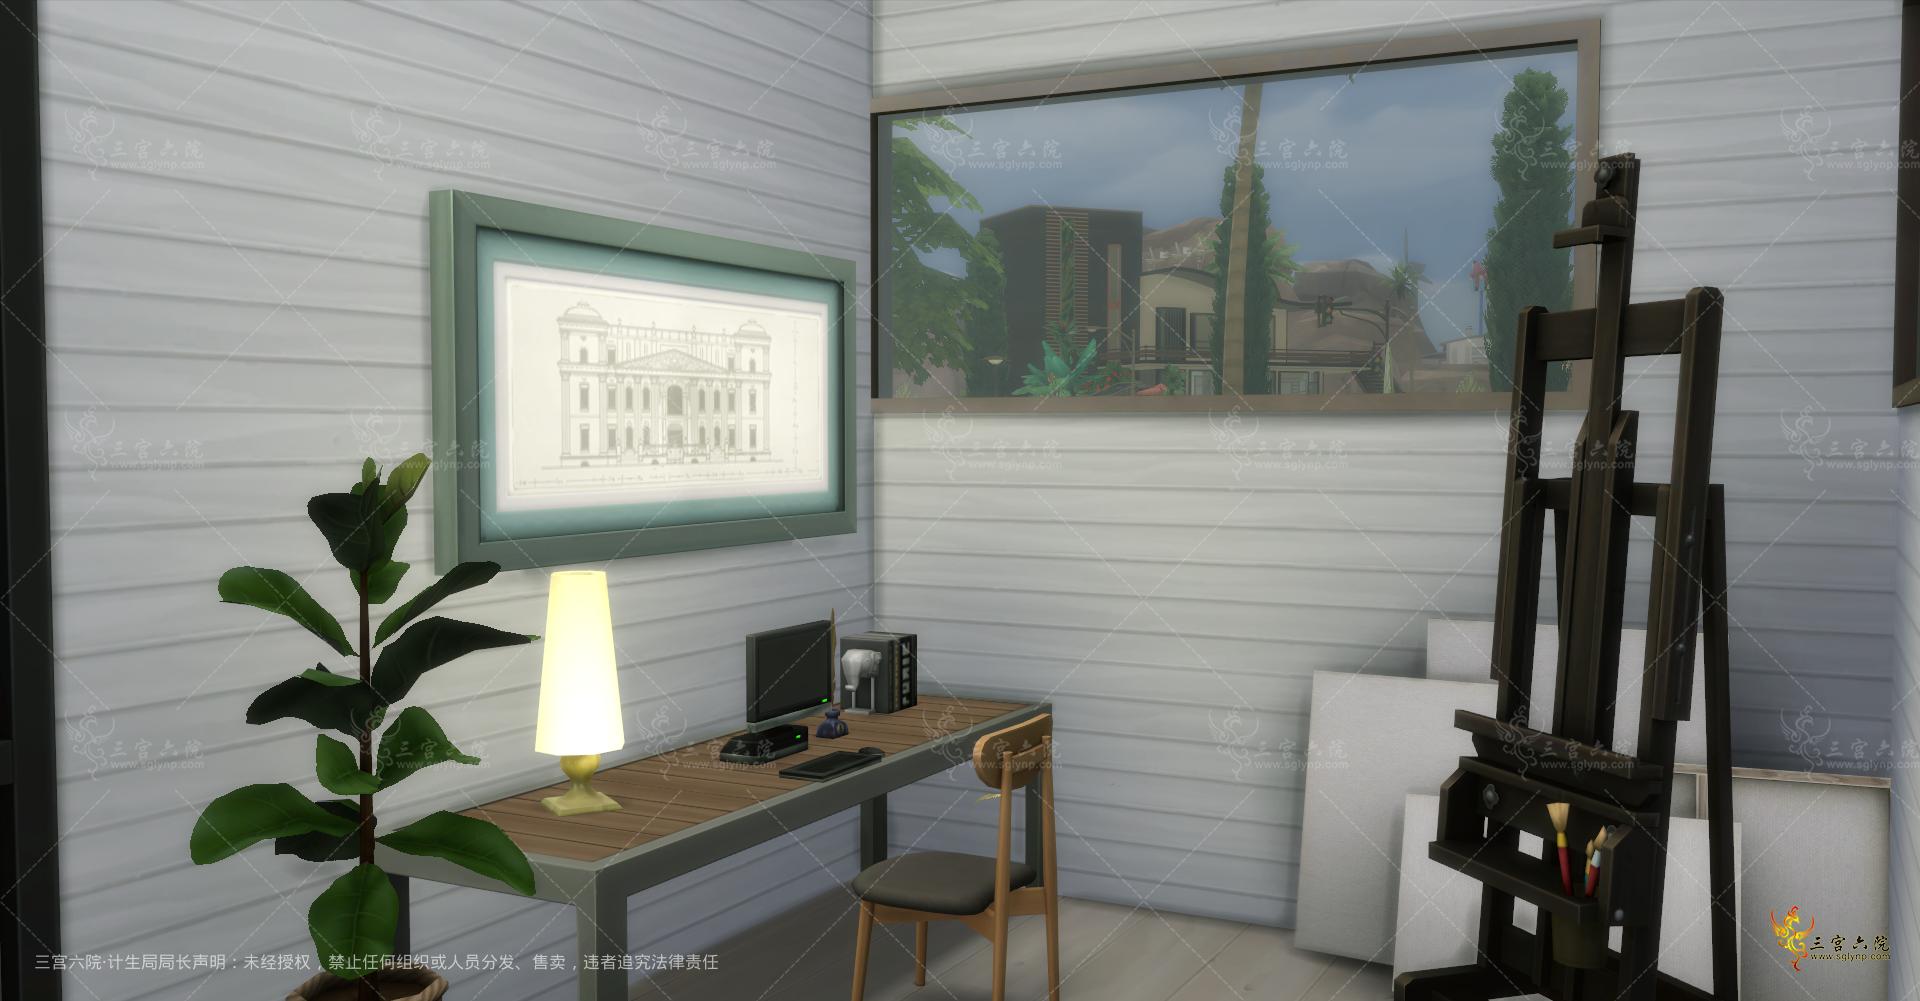 Sims 4 Screenshot 2021.11.22 - 22.05.53.88.png